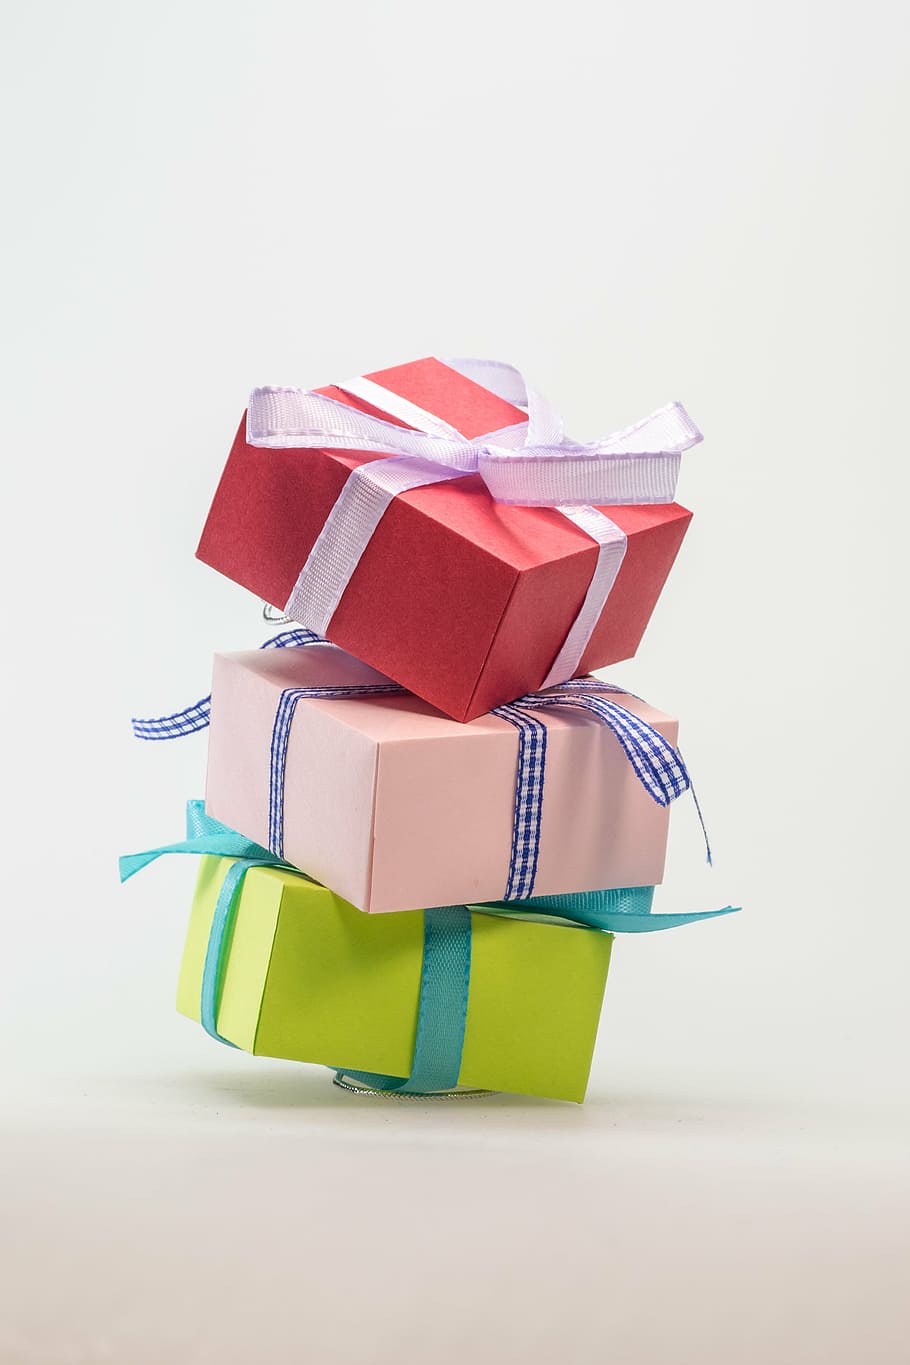 caja de regalo de colores surtidos, hecha, regalo, paquete, lazo, lazo de paquete, navidad, decoración navideña, dar, adviento